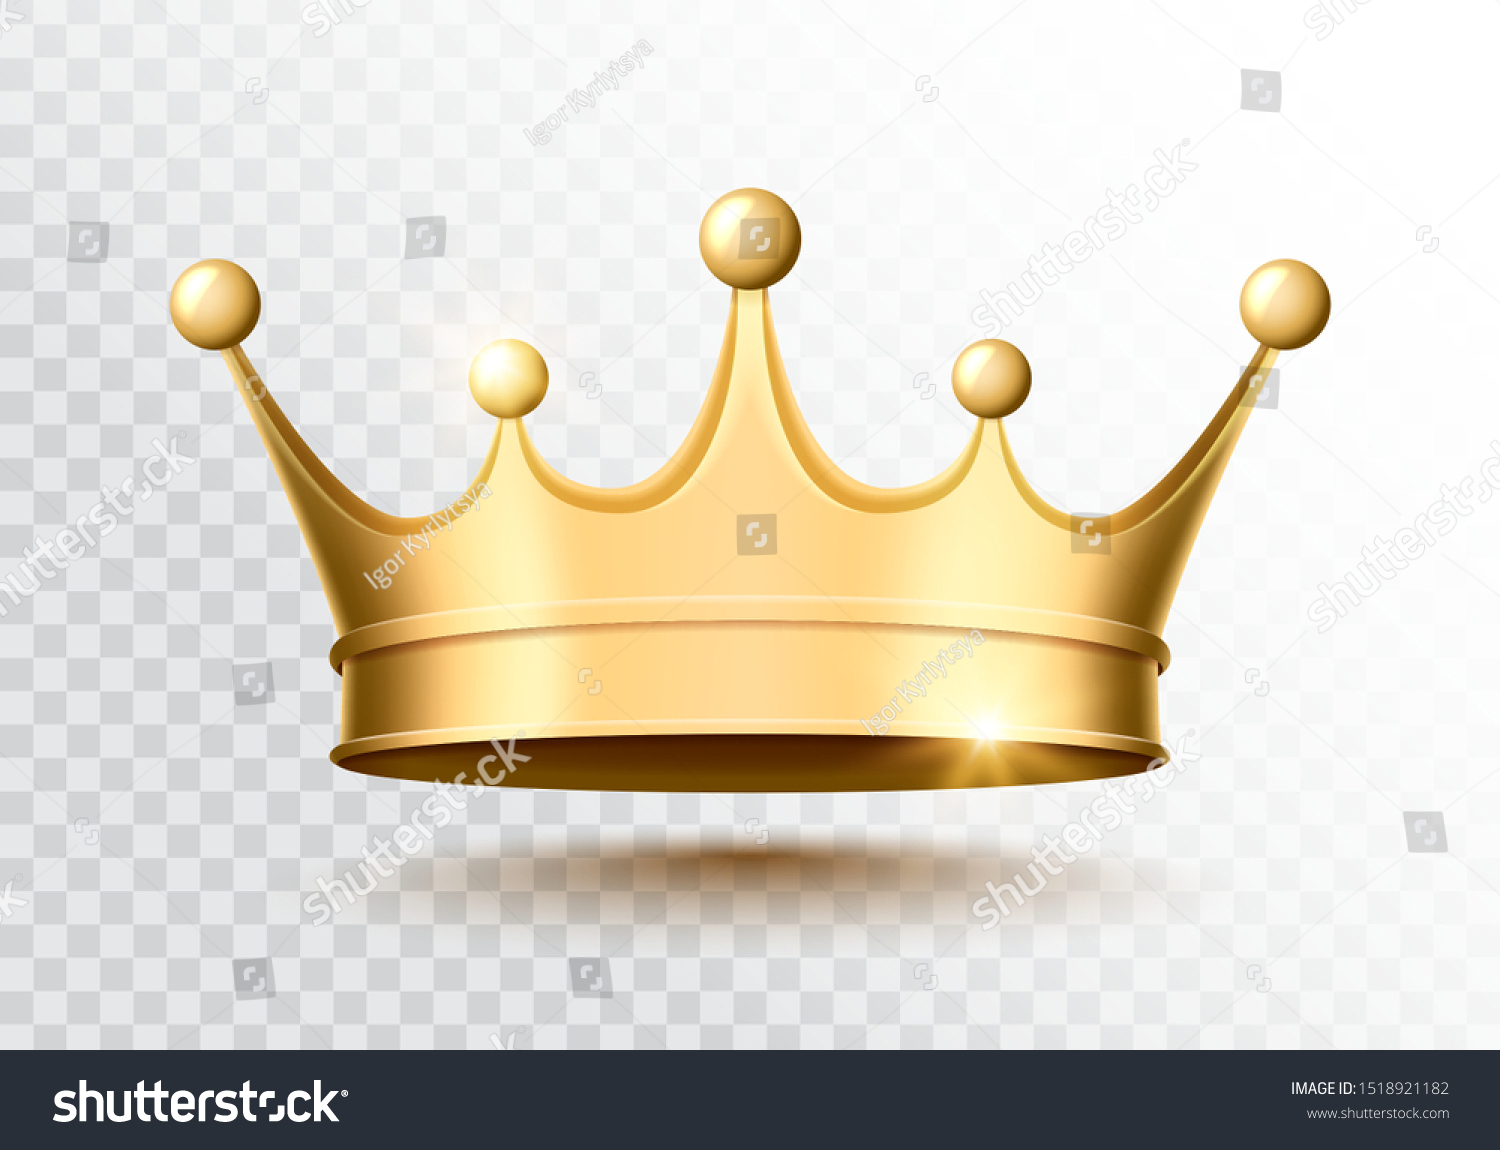 Golden crown on a transparent background. Vector illustration. #1518921182